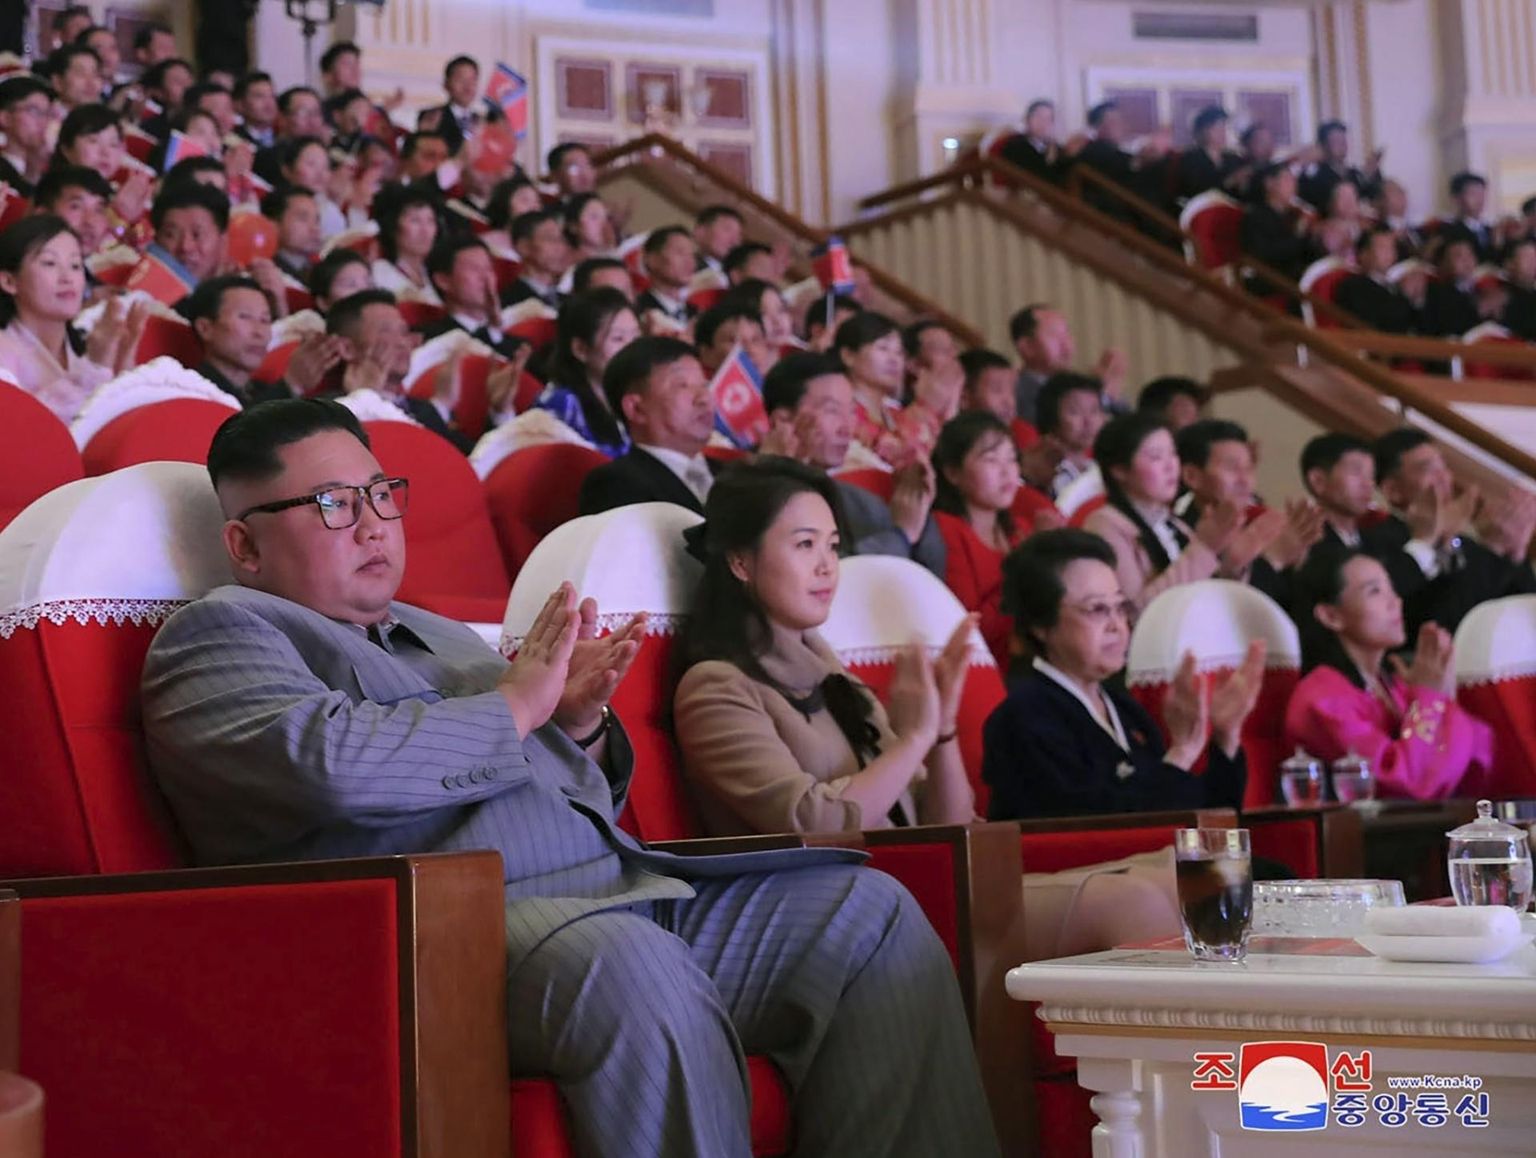 Põhja-Korea valitsus avalikustas nädalavahetusel foto, millel on näha riigi liidrit Kim Jong-uni (vasakult) Korea uusaasta kontserdil koos abikaasa Ri Sol-ju ja tädi Kim Kyong-huiga, kes astus avalikkuse ette esimest korda alates 2013. aastast, mil tema abikaasa hukati.